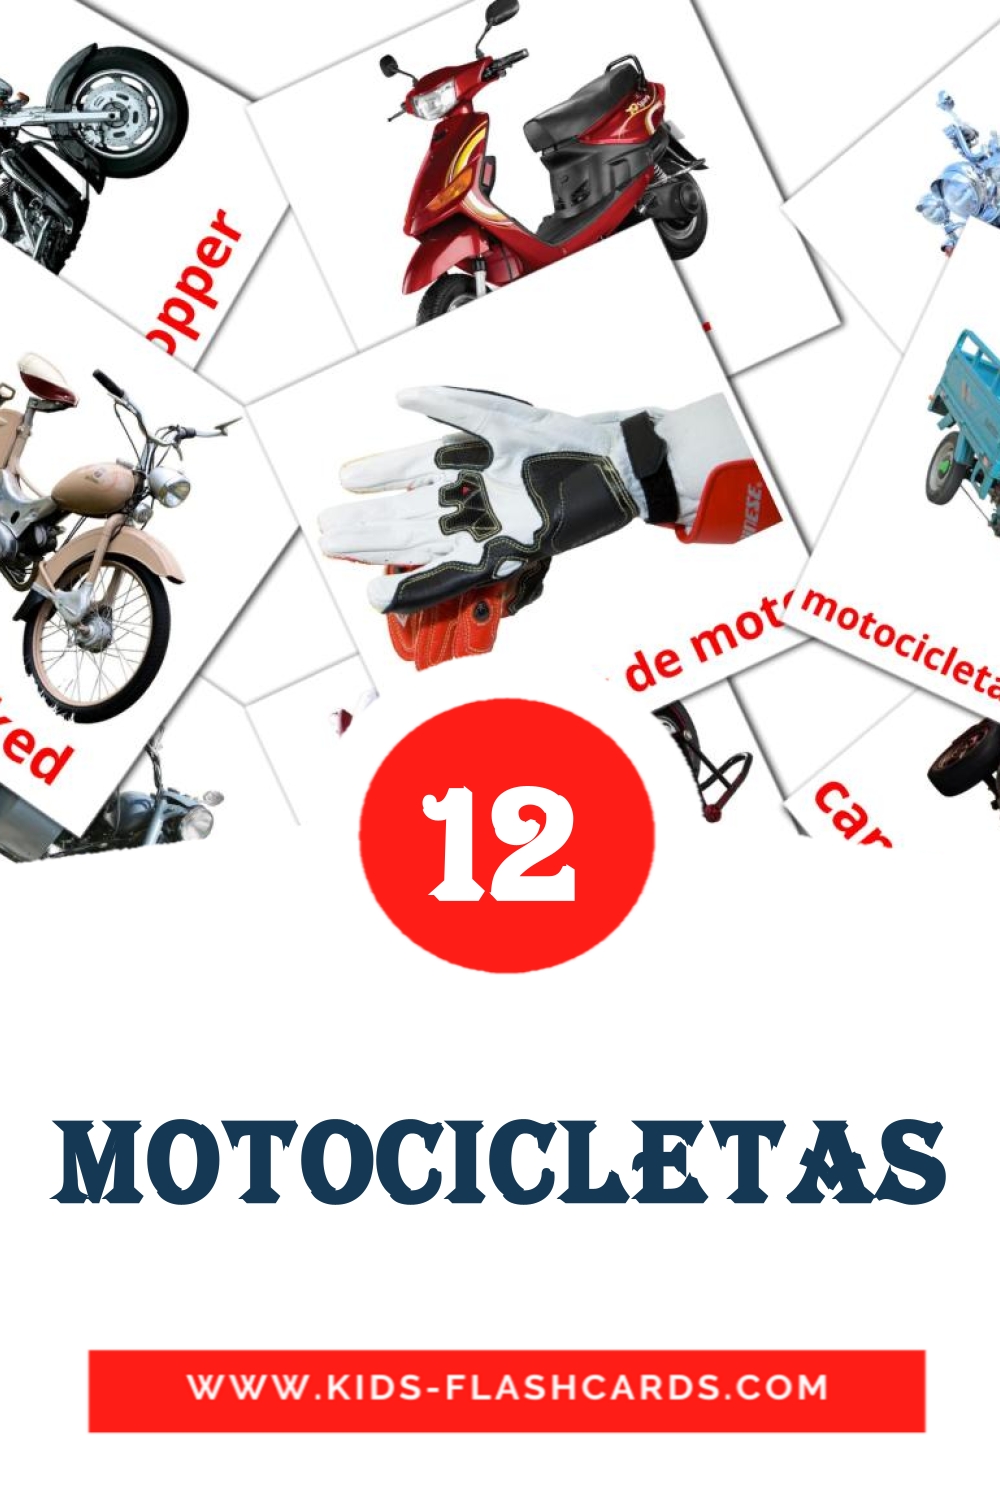 Motocicletas на испанском для Детского Сада (14 карточек)